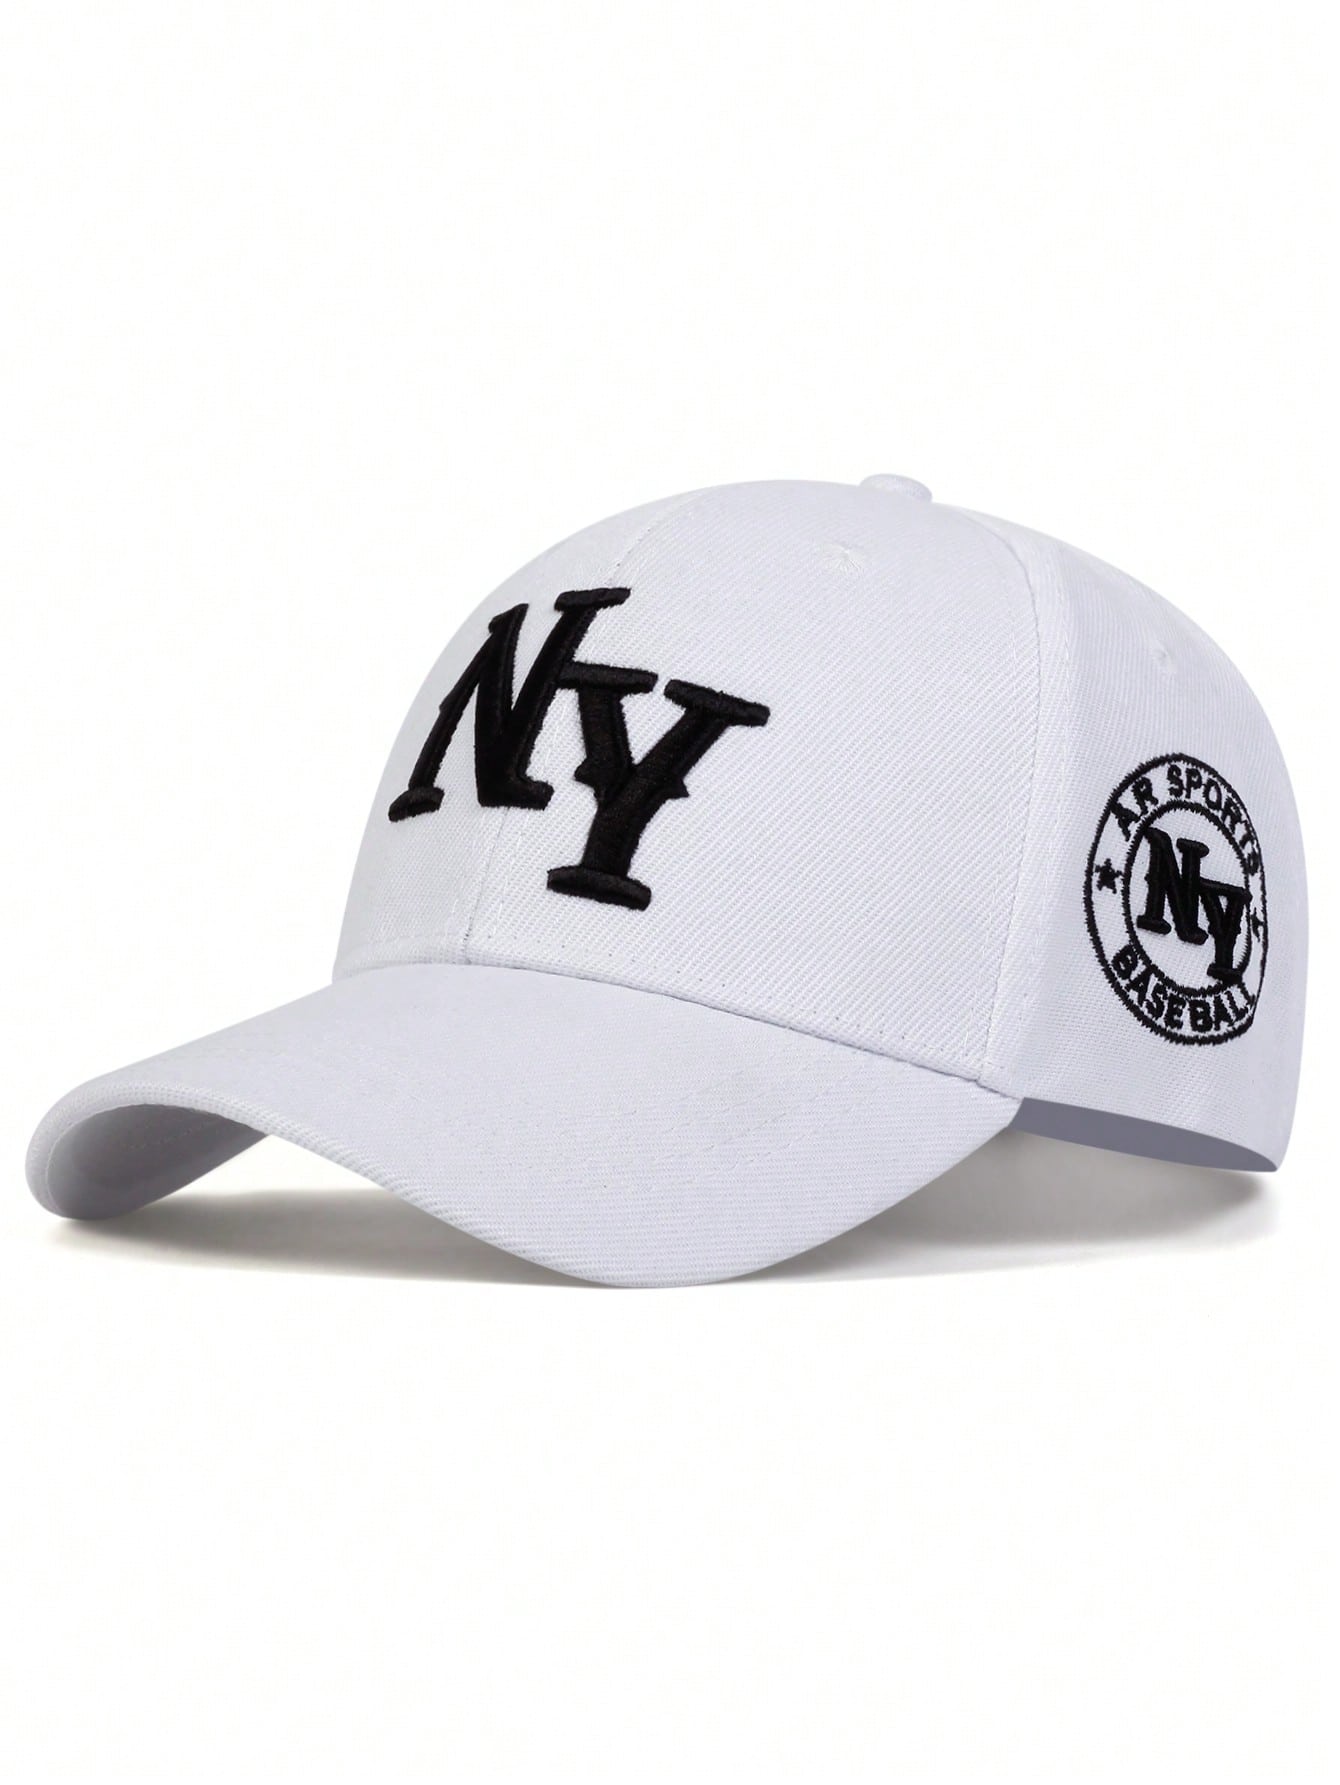 1 шт. мужская бейсболка с вышивкой букв «Нью-Йорк», белый регулируемая модная унисекс шляпа для отдыха на открытом воздухе